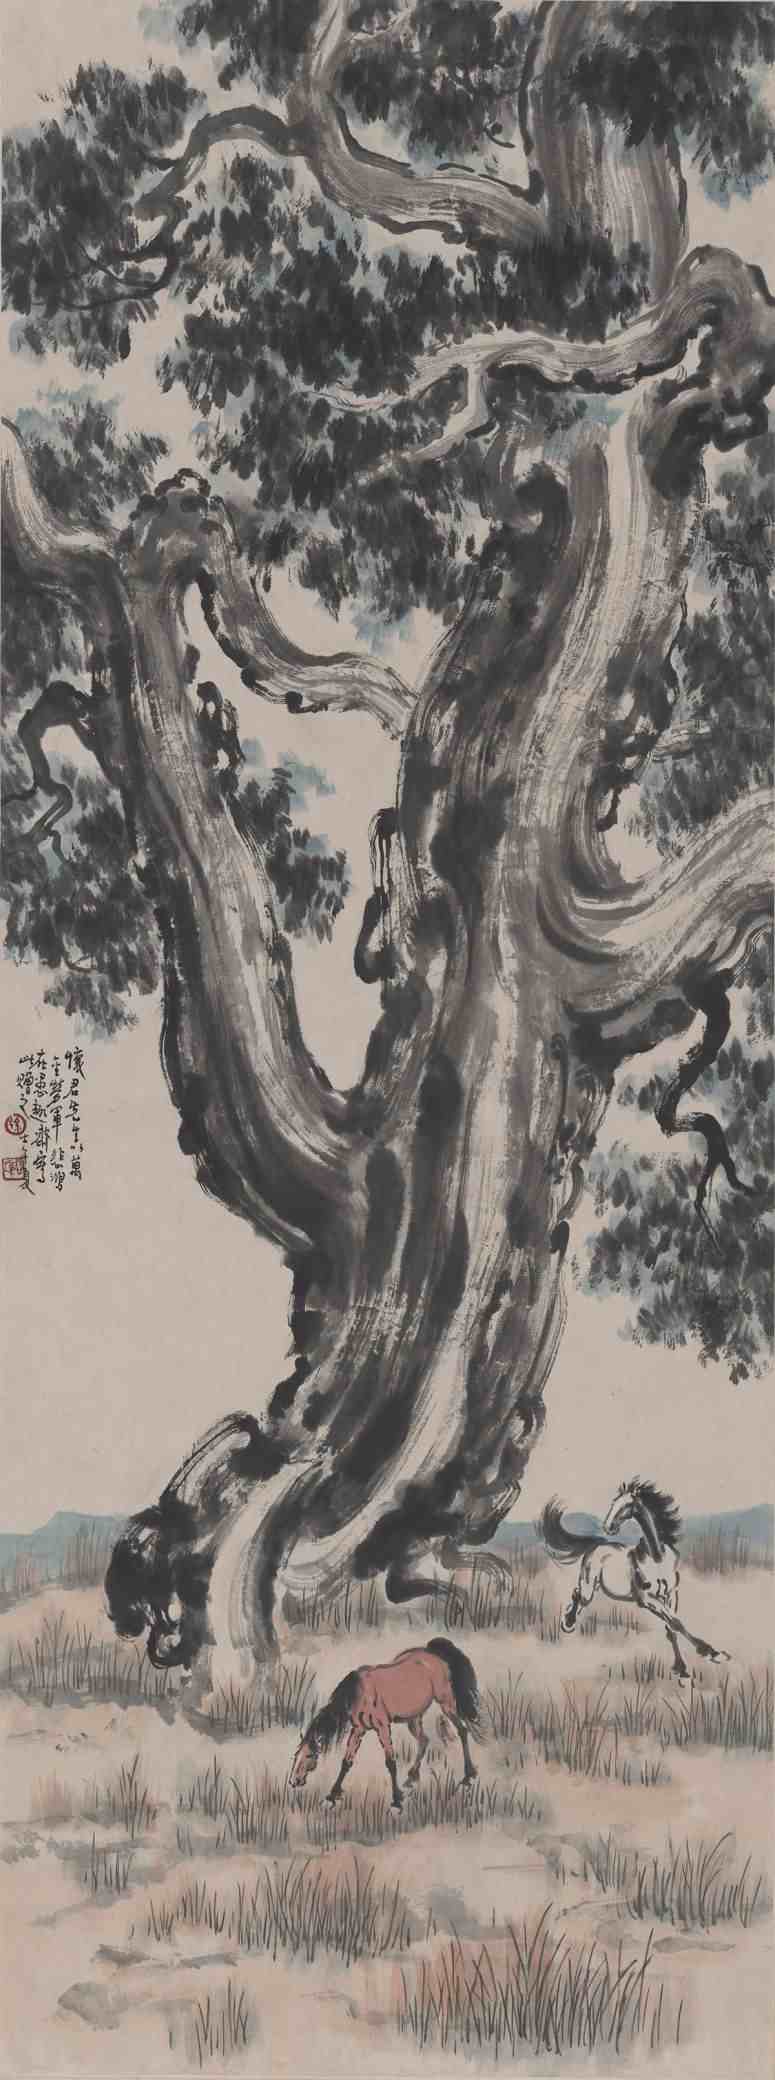 中国现代画家徐悲鸿的马画作品欣赏